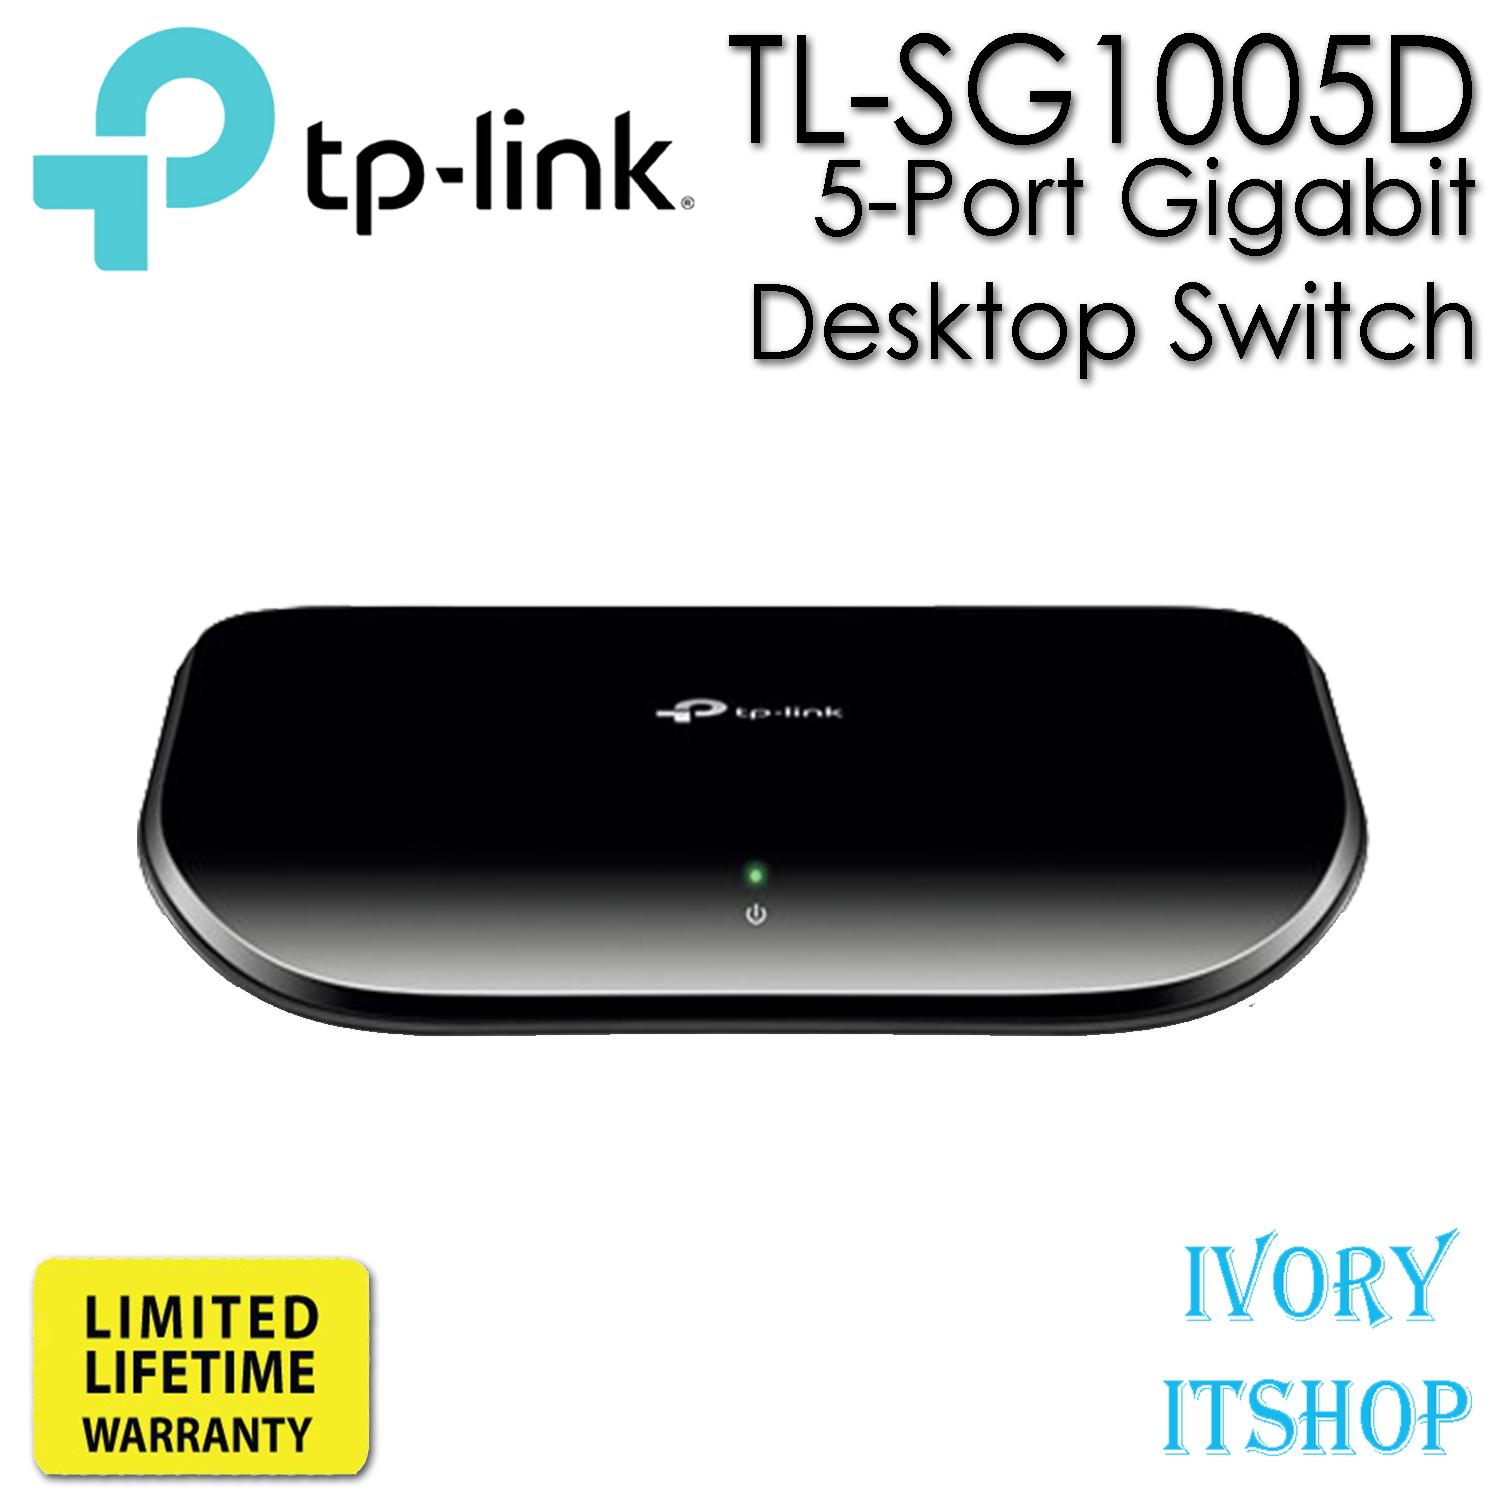 TP-Link TL-SG1005D 5-Port Gigabit Desktop Switch SG1005D/ivoryitshop